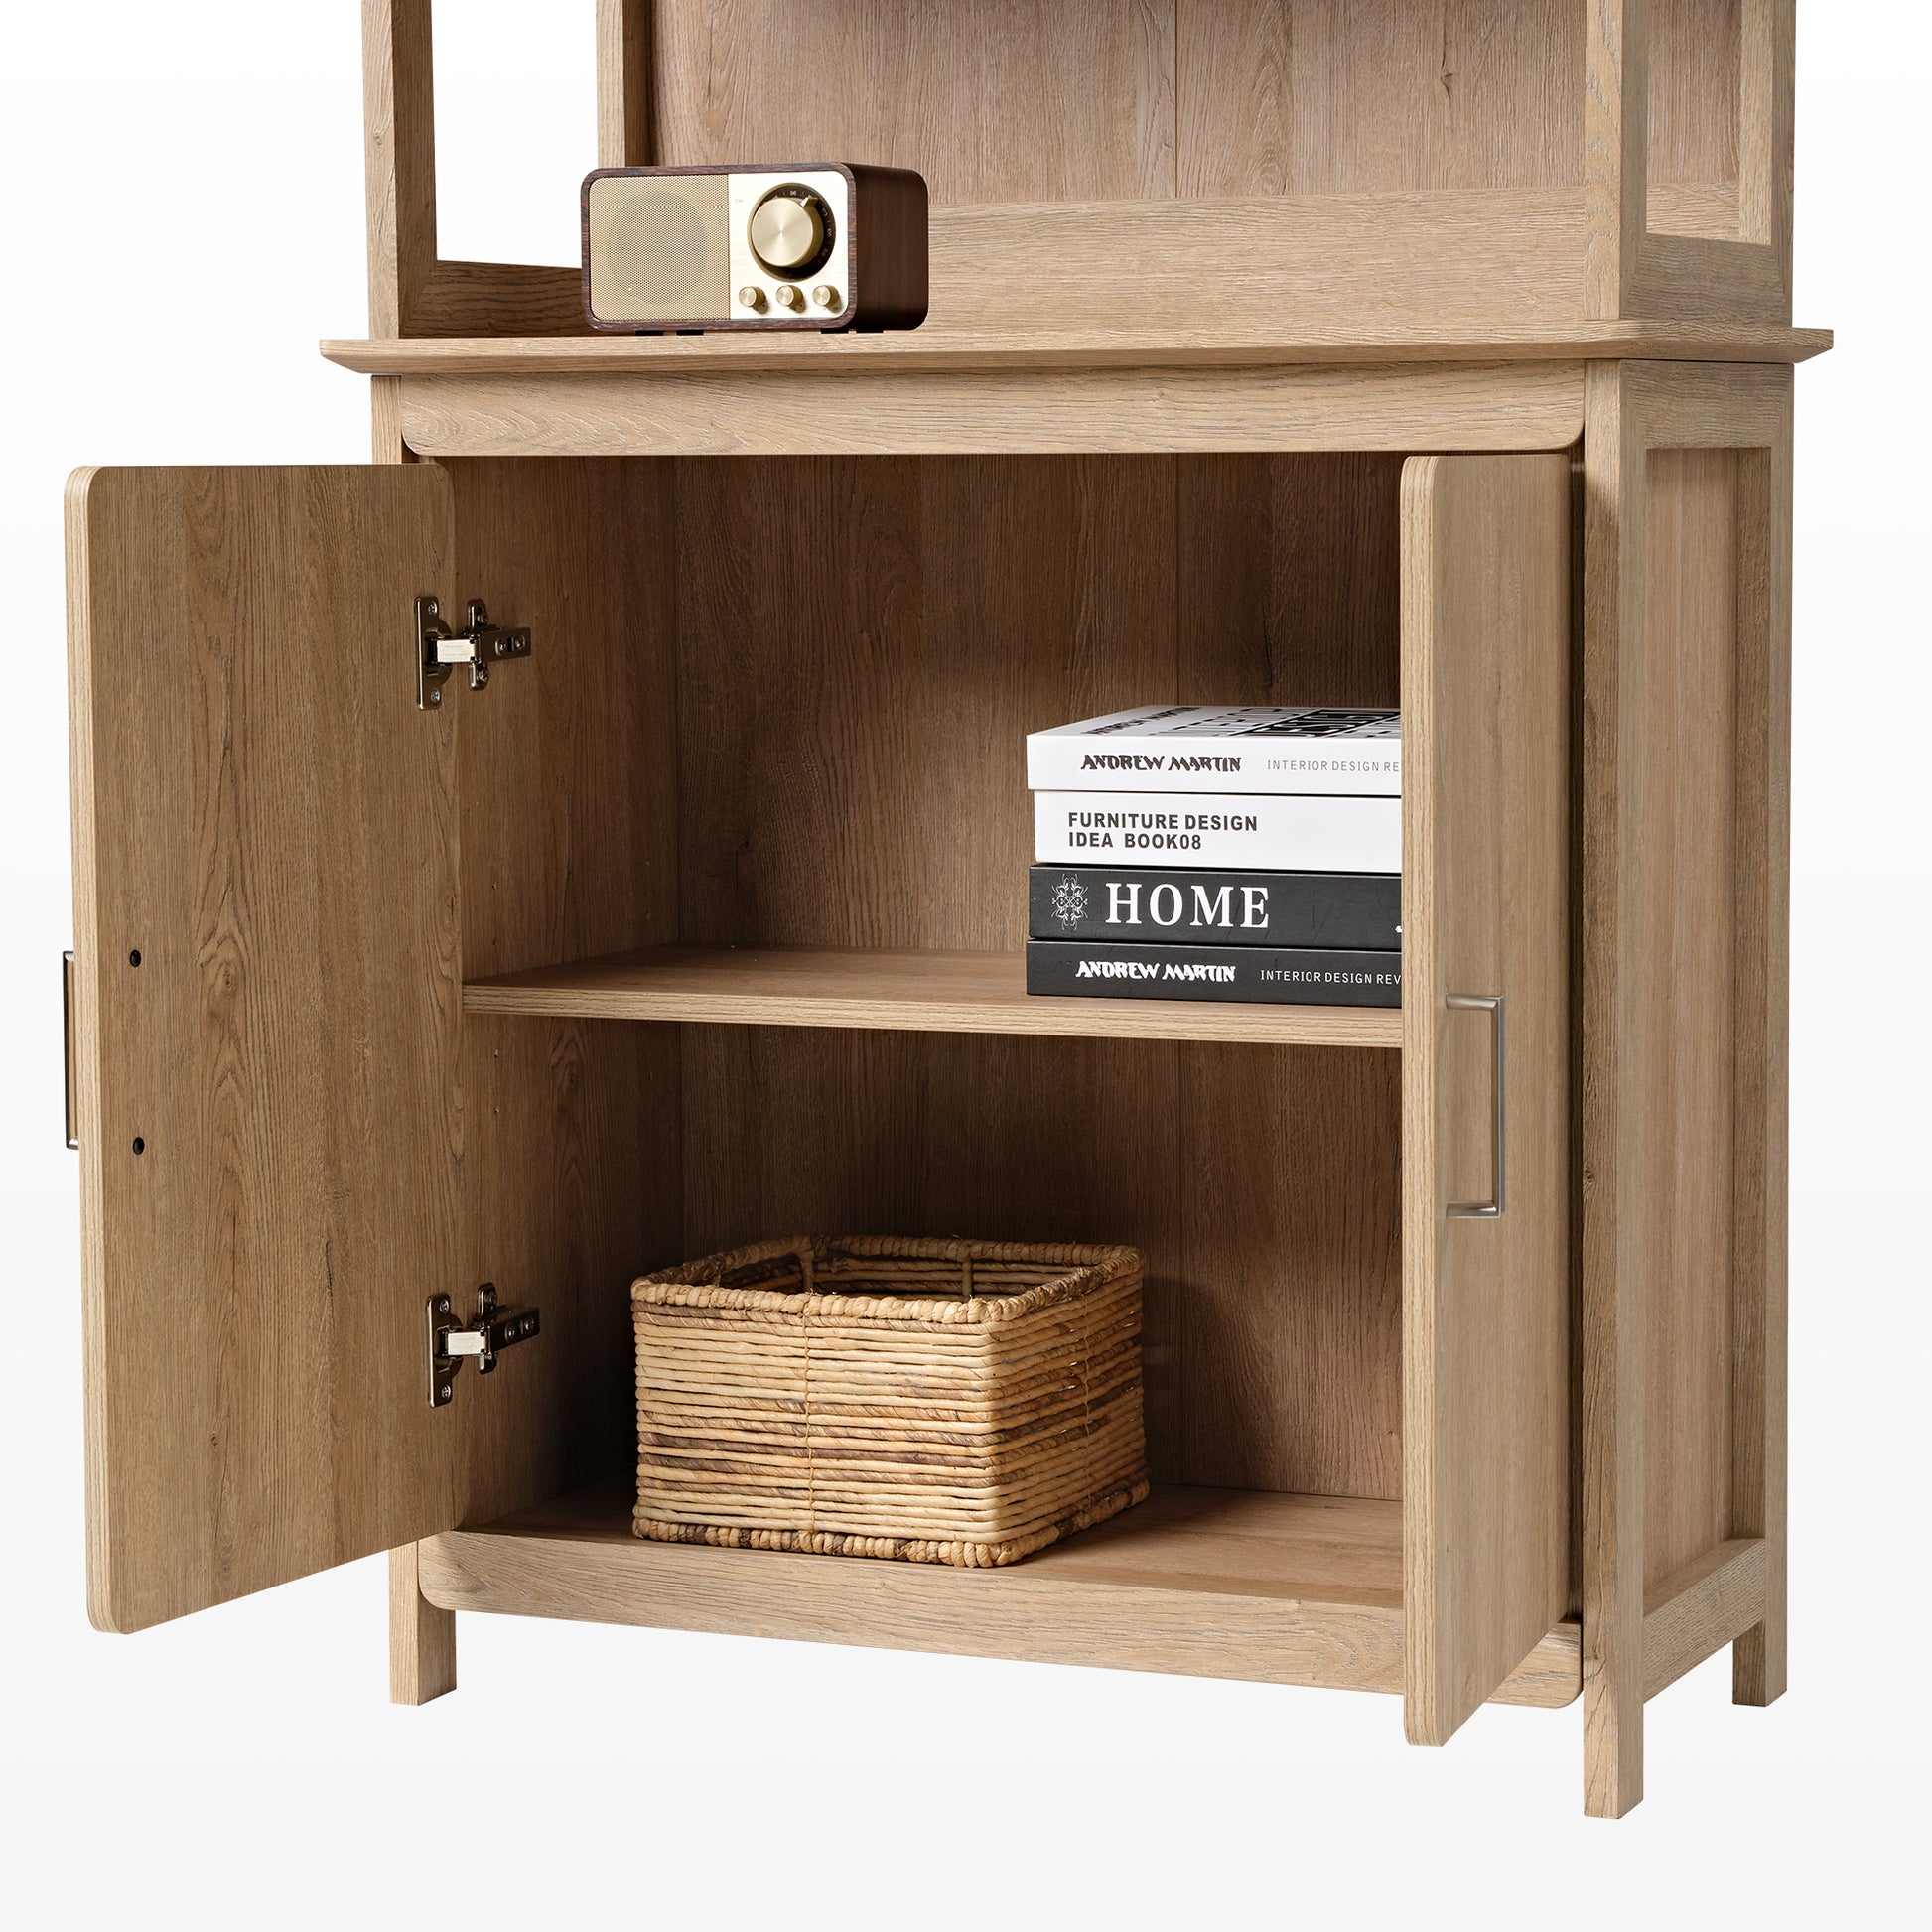 Eureka 29" storage cabinet bookshelf, oak